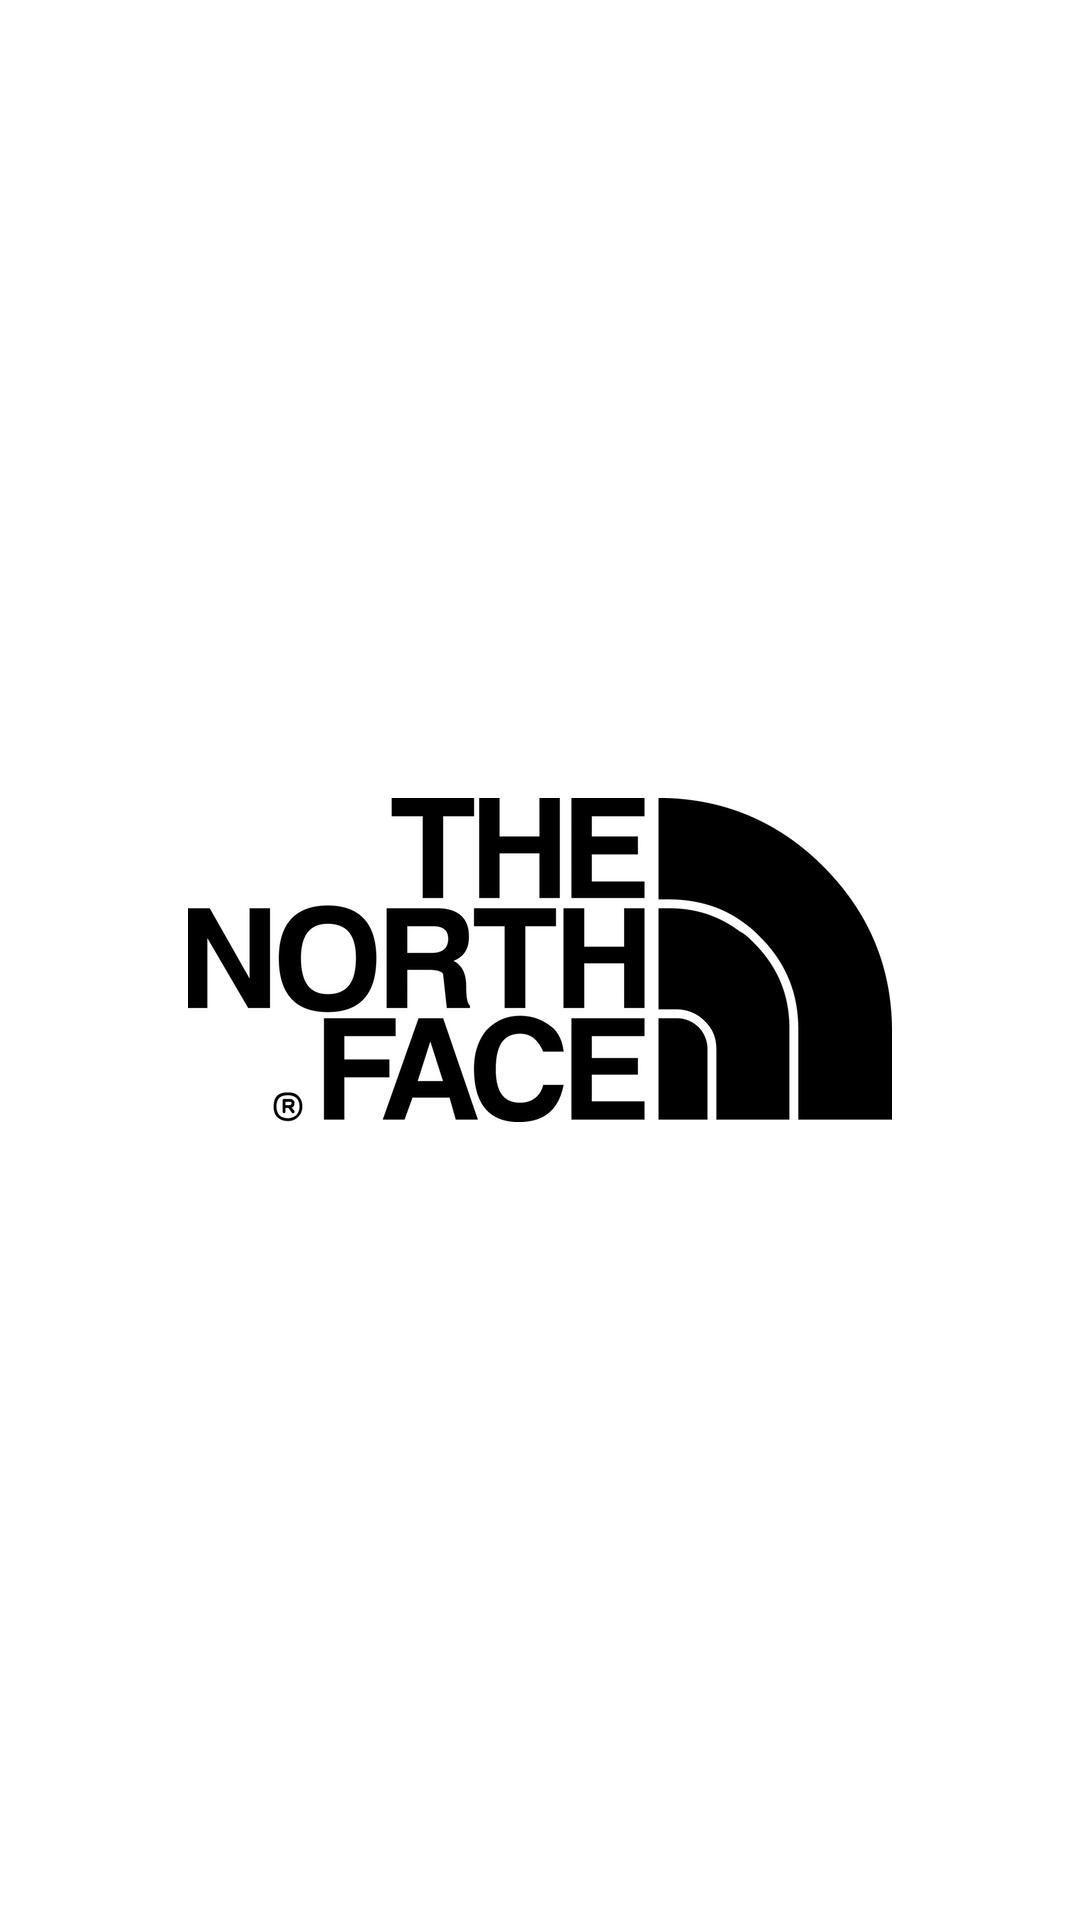 17 North Face Wallpapers  WallpaperSafari